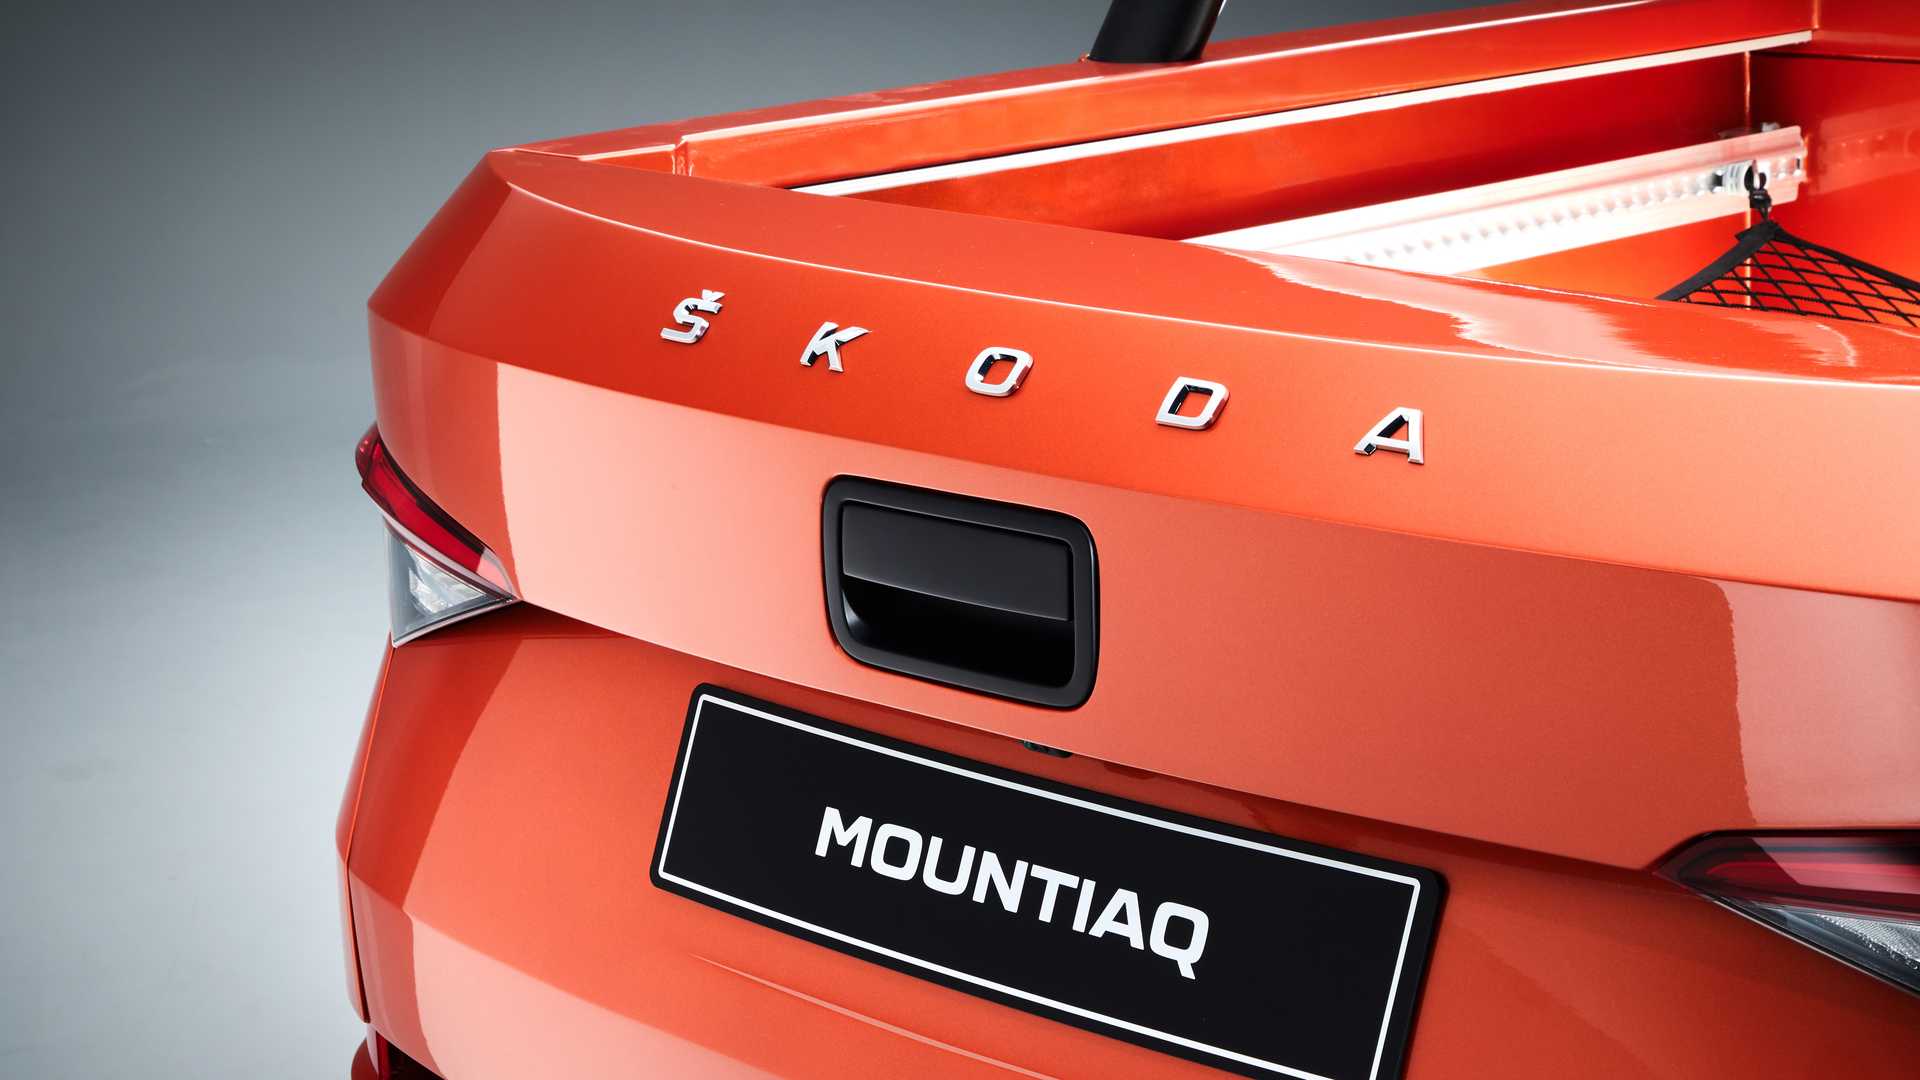 Škoda Mountiaq Concept